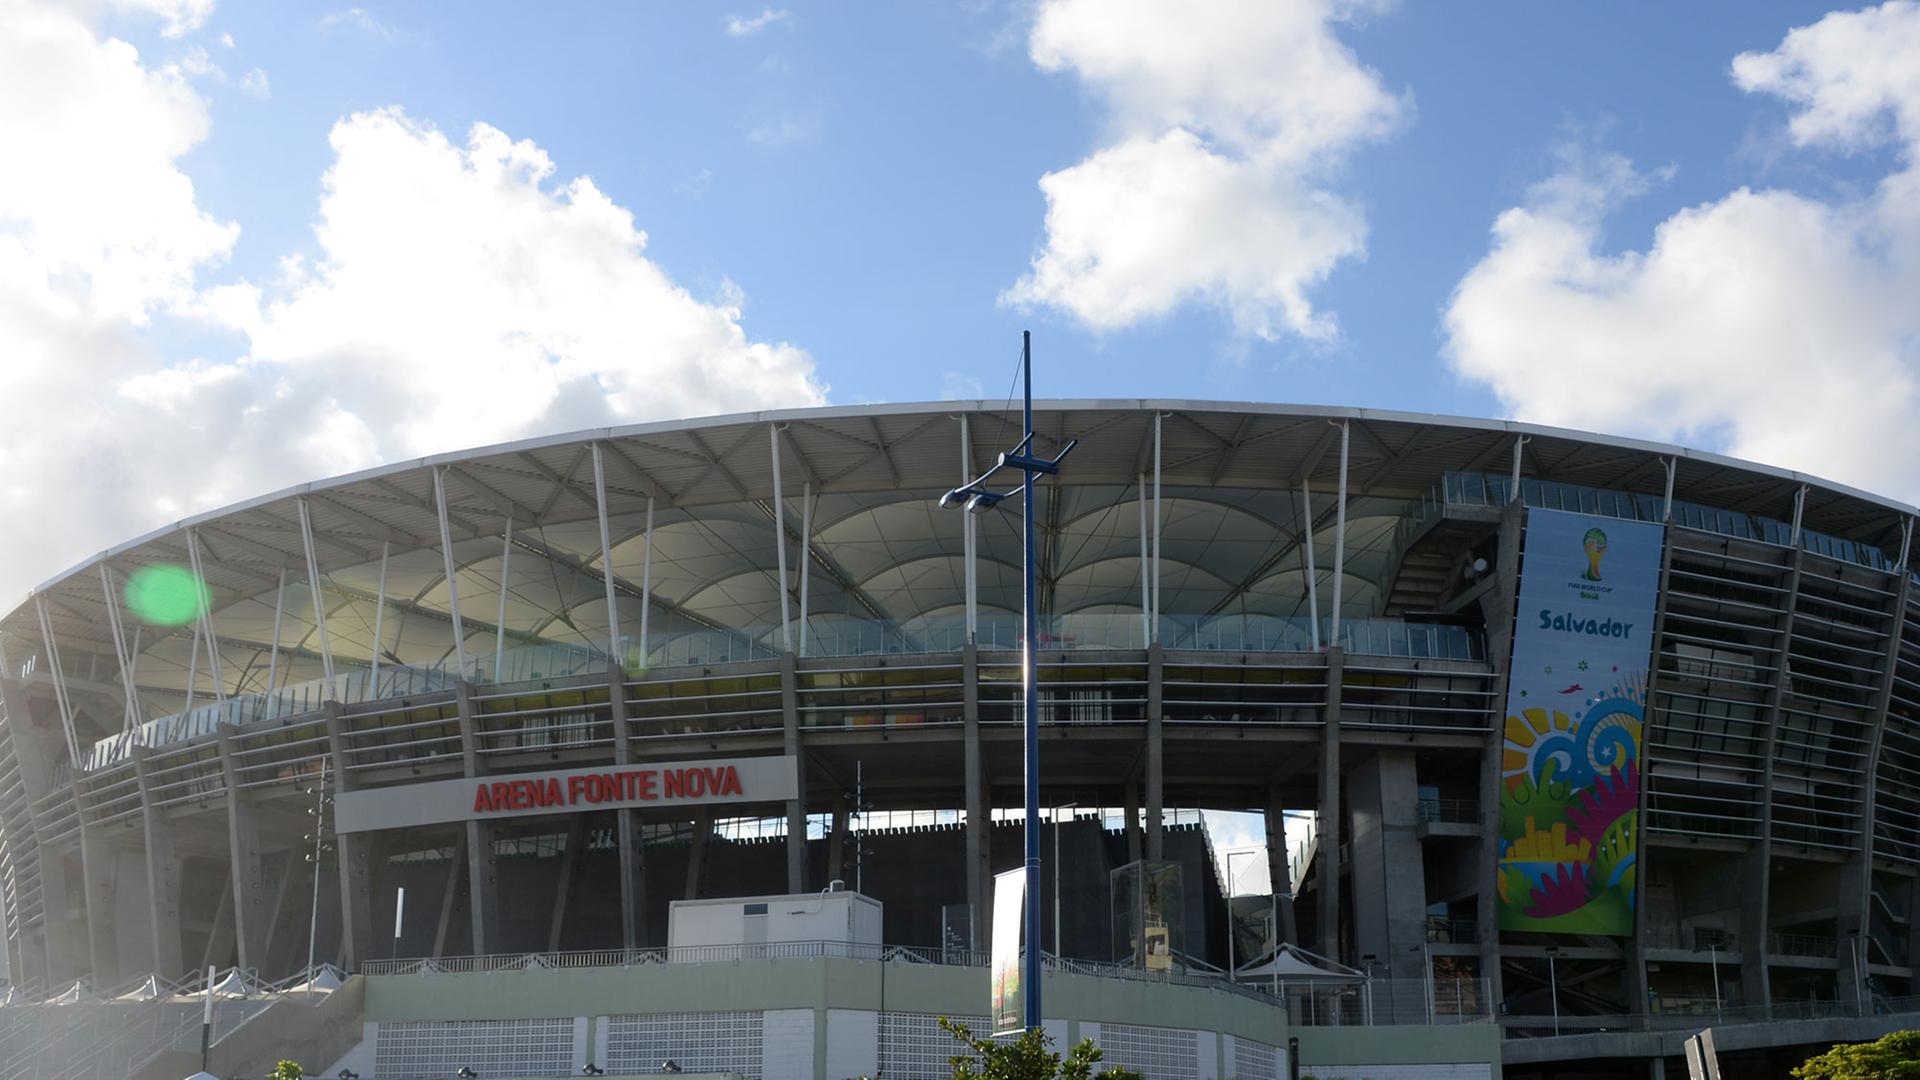 Die neugebaute Arena Fonte Nova in Salvador Bahia an der Ostküste Brasiliens. Entworfen von dem deutschen Architekturbüro Schulitz und Partner.